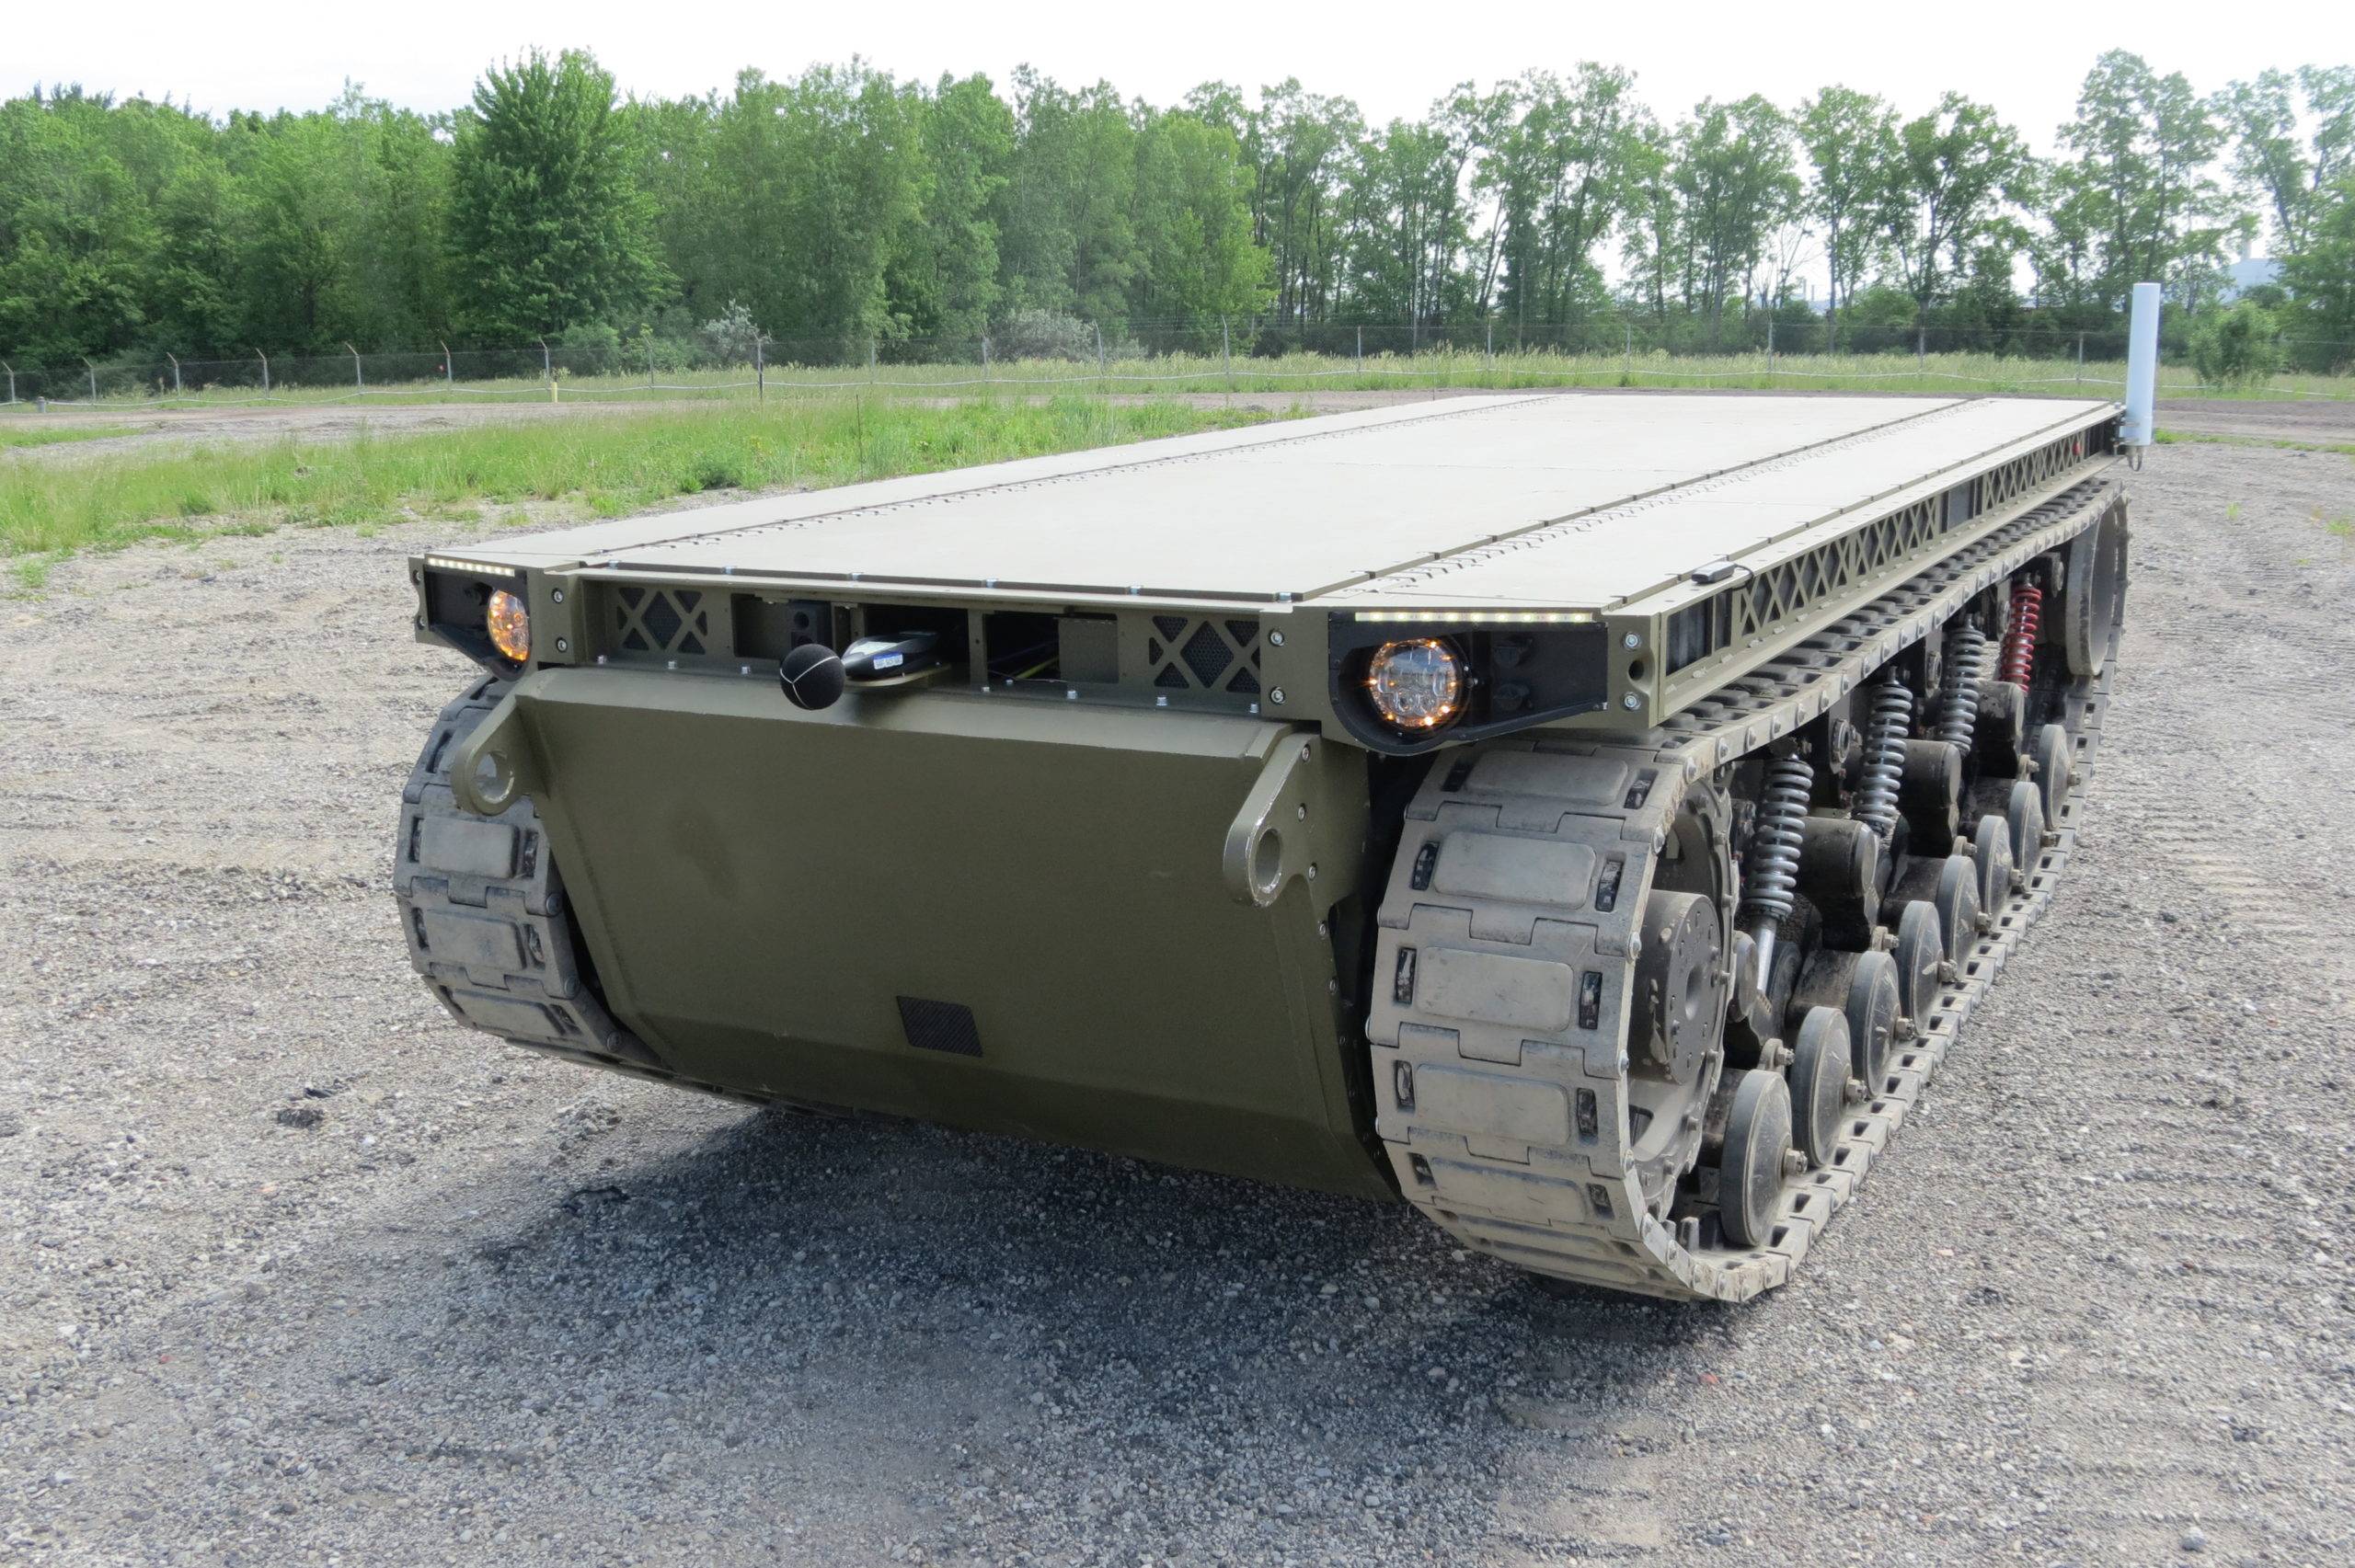 trx履带式机器人有效载荷能力超过10吨,未来战场使用空间大!